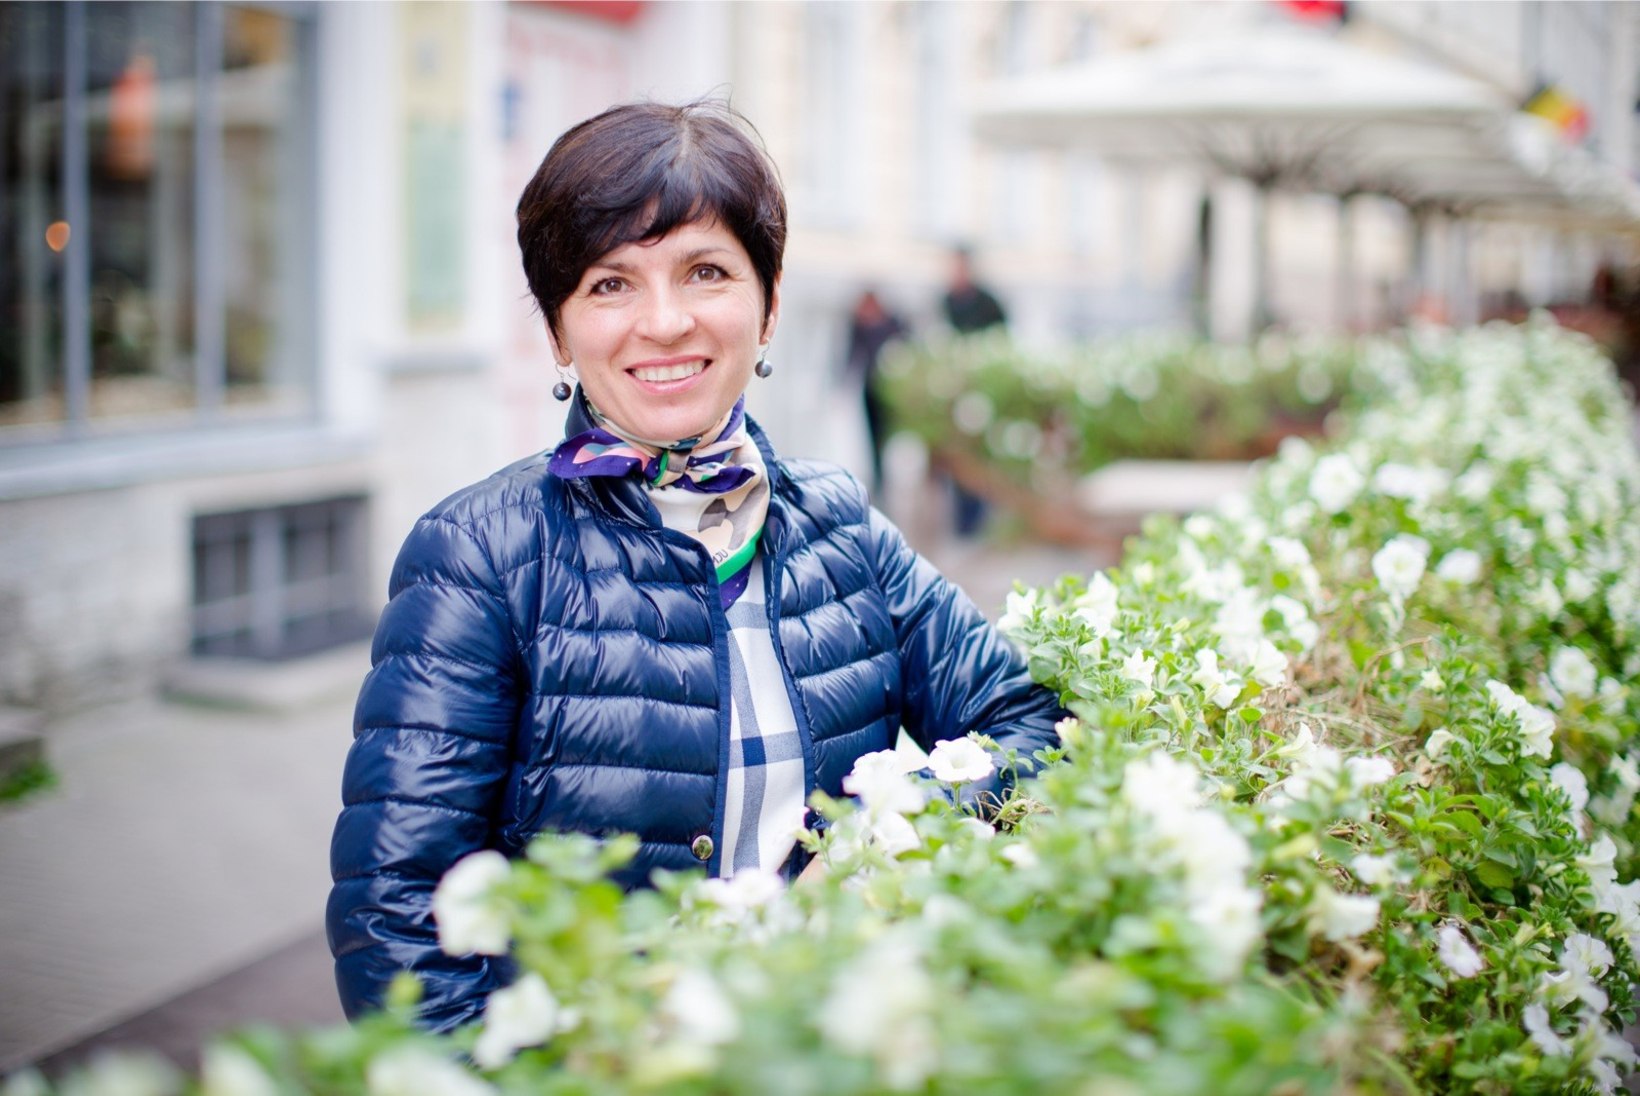 Asjatundja arvamus | Anna Levandi OM-medali võitnud Zabijakost: Eestis pole selle taseme jaoks tingimusi